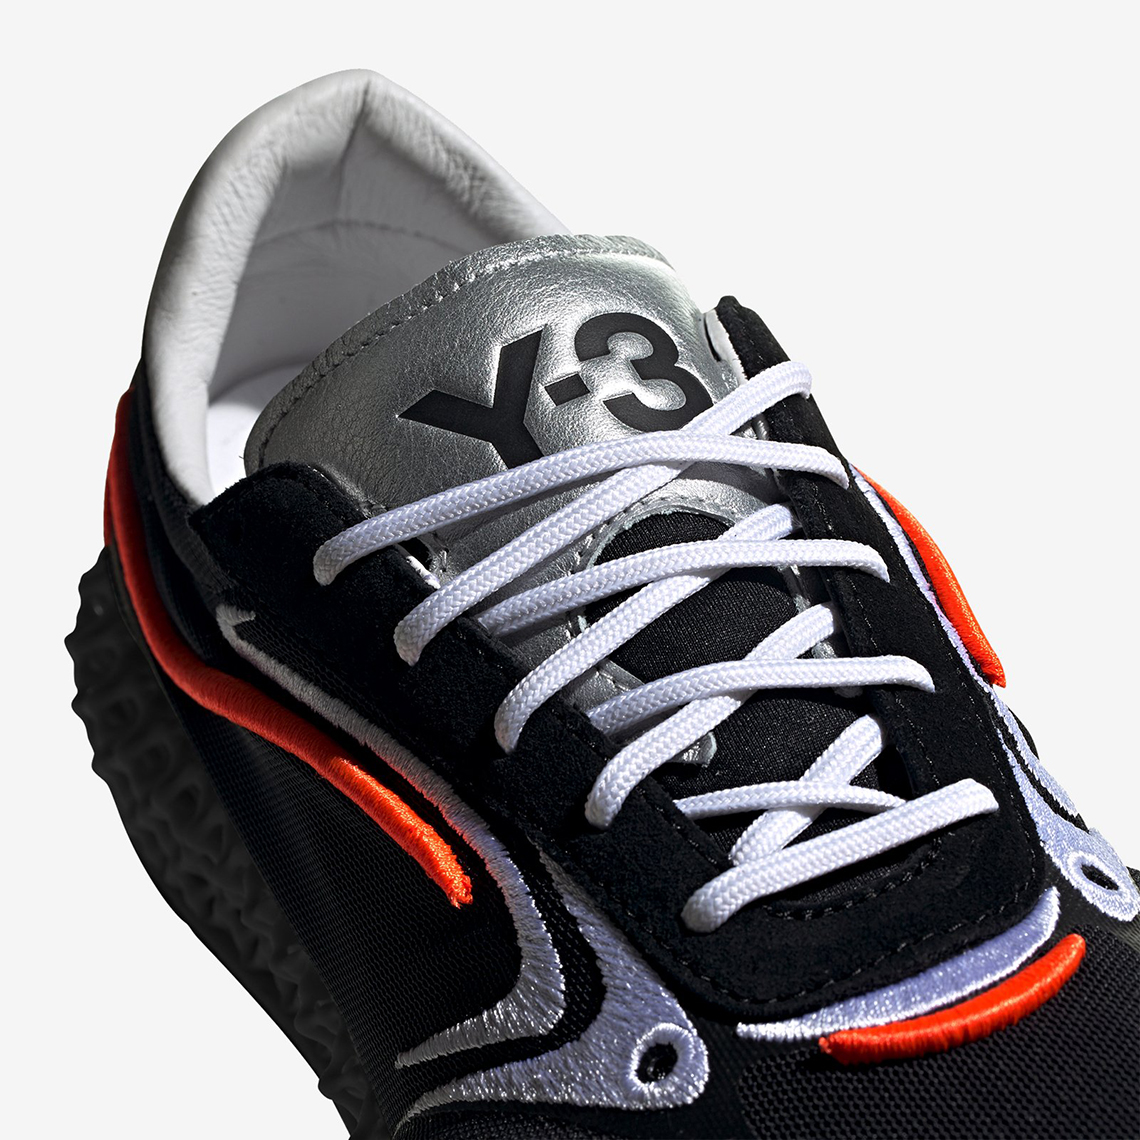 Adidas Y 3 Runner 4d Fu9208 Black Orange Release Date 5